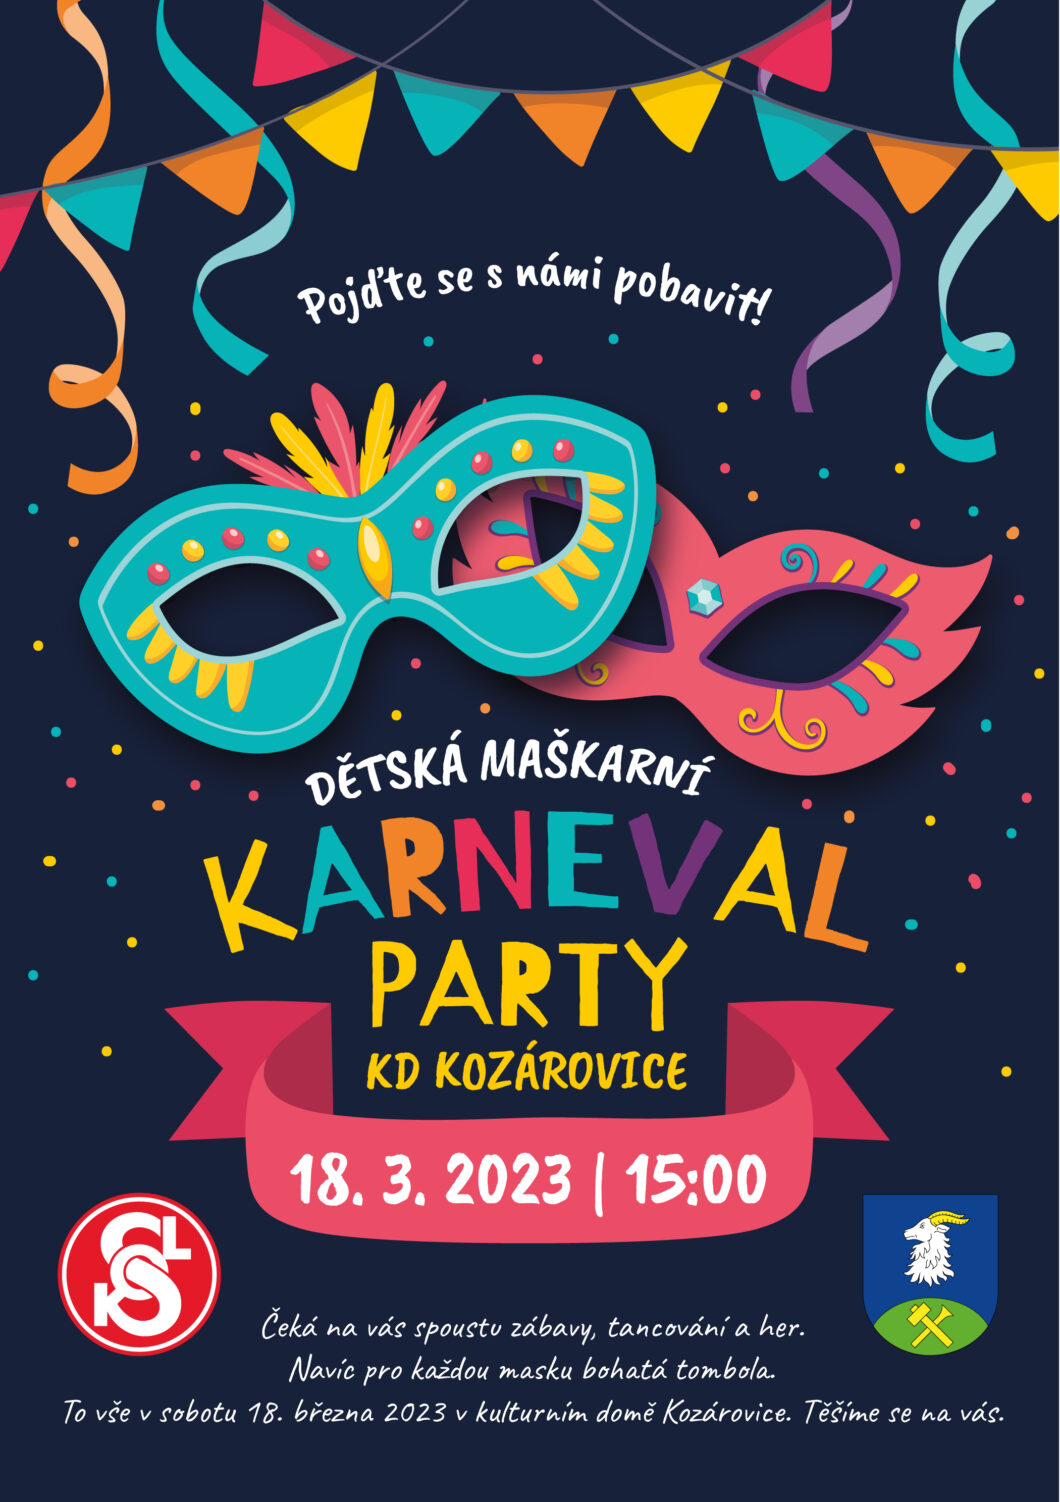 Dětská maškarní karneval party – 18. 3. 2023